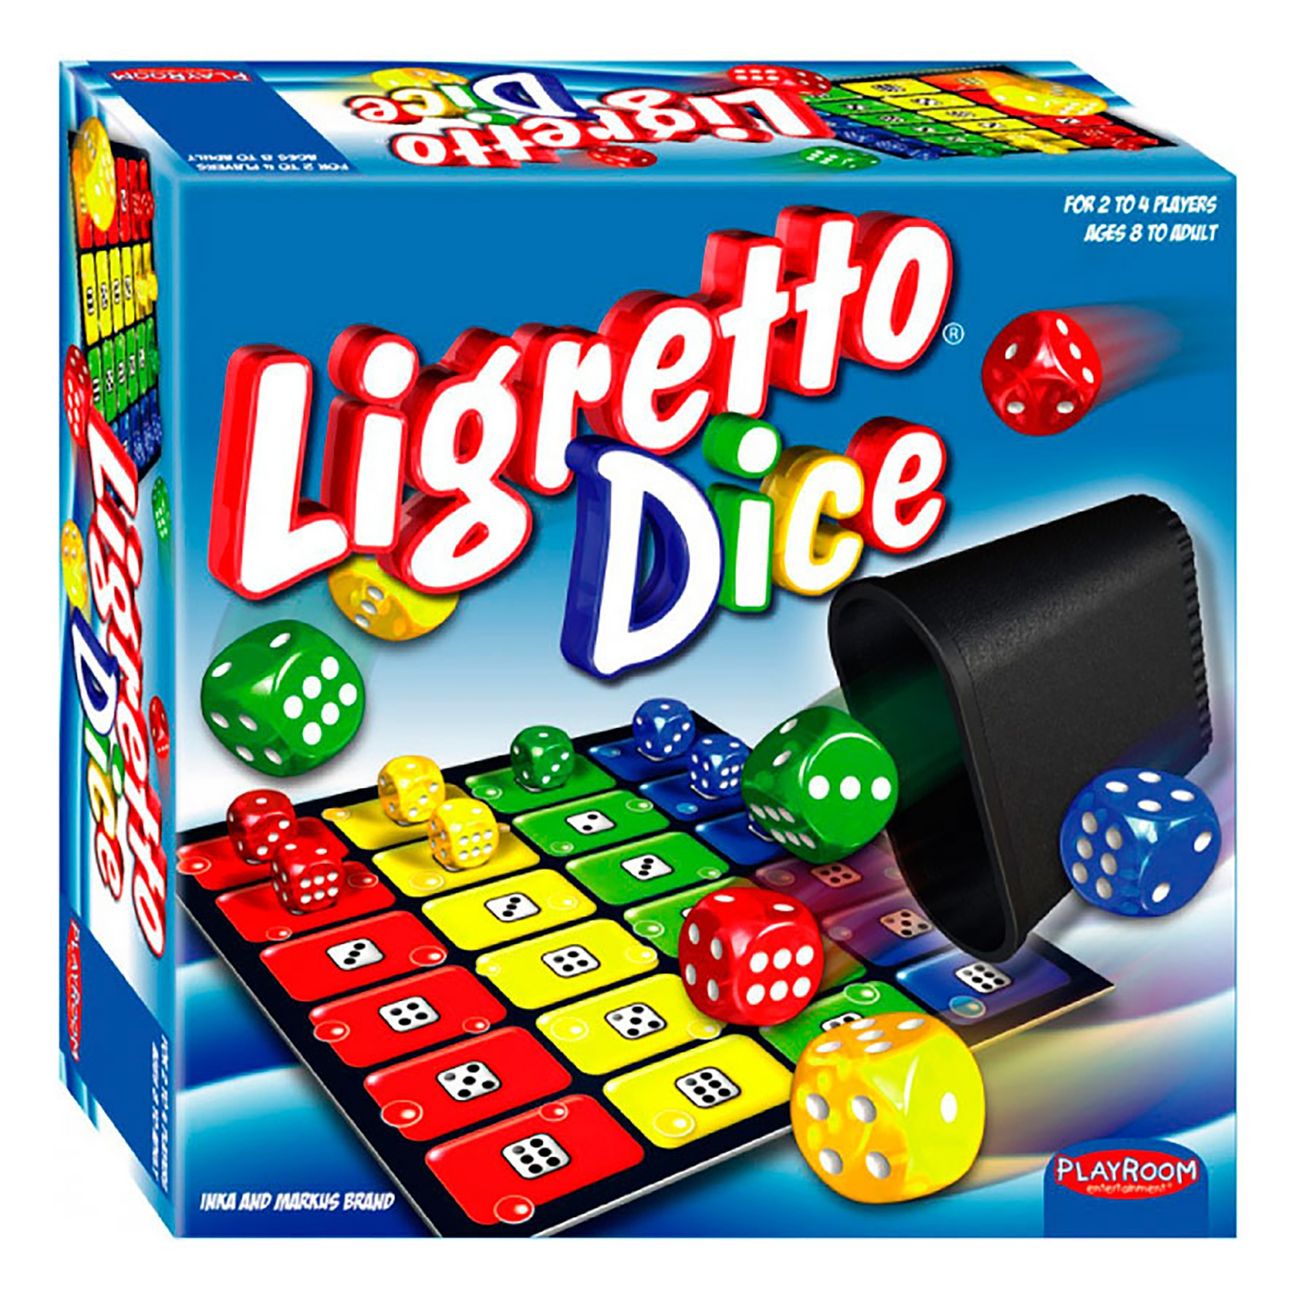 ligretto-dice-spel-91825-1